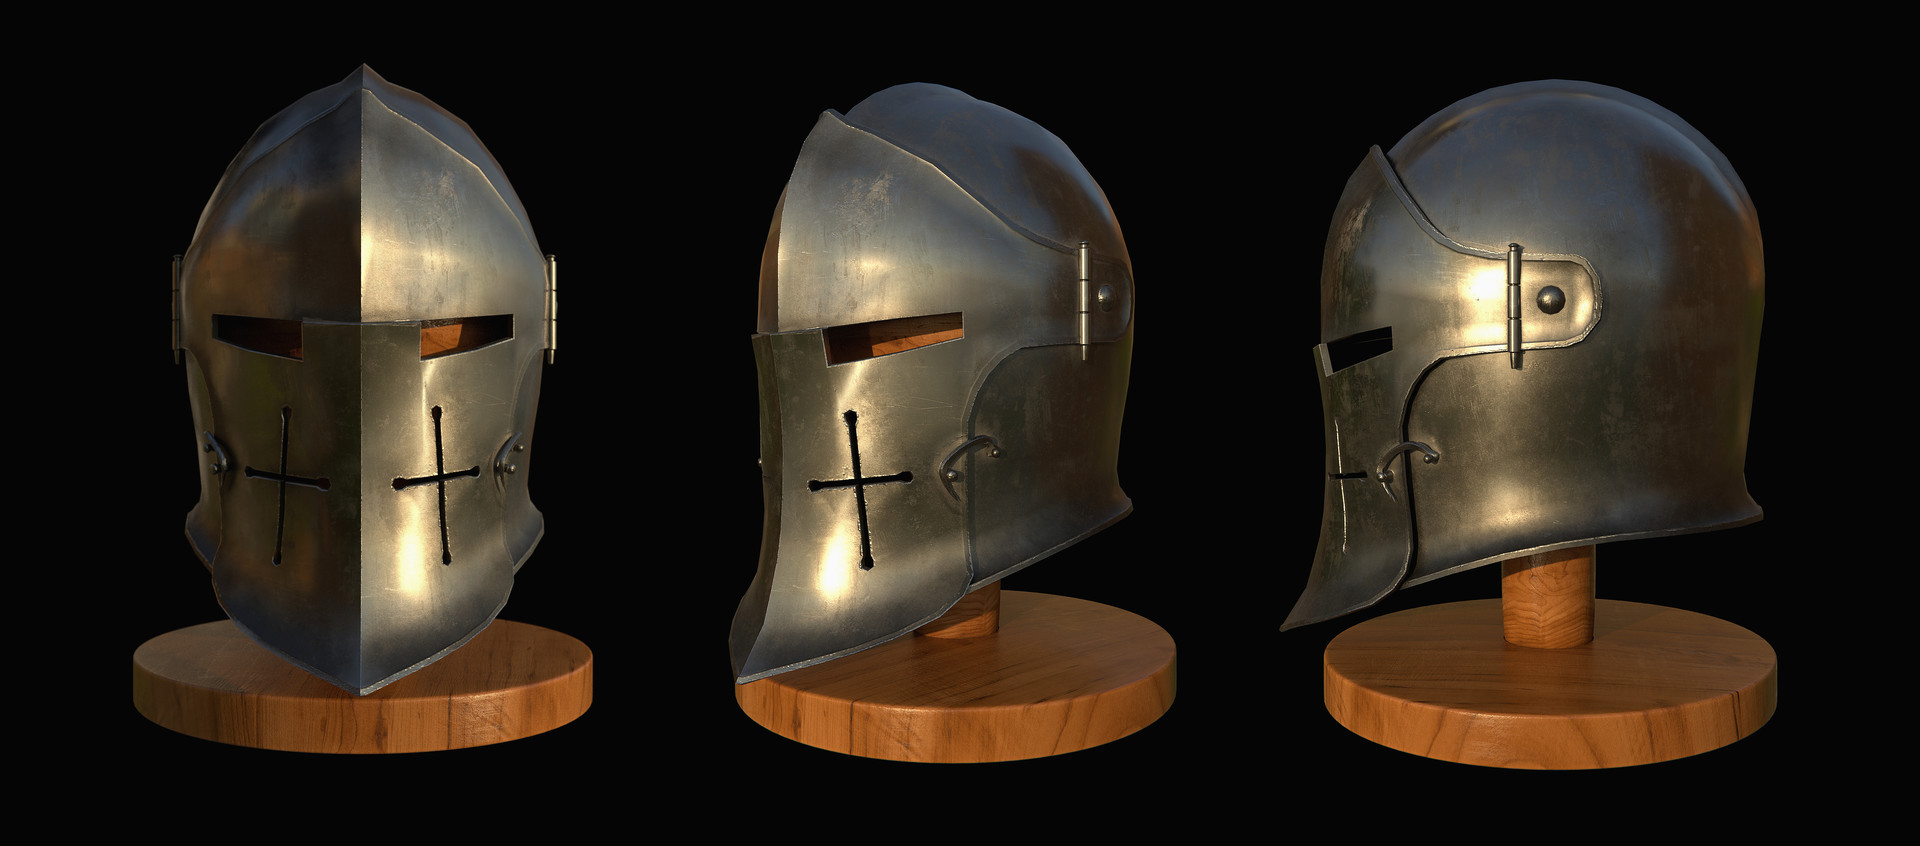 Medieval helmet 1.